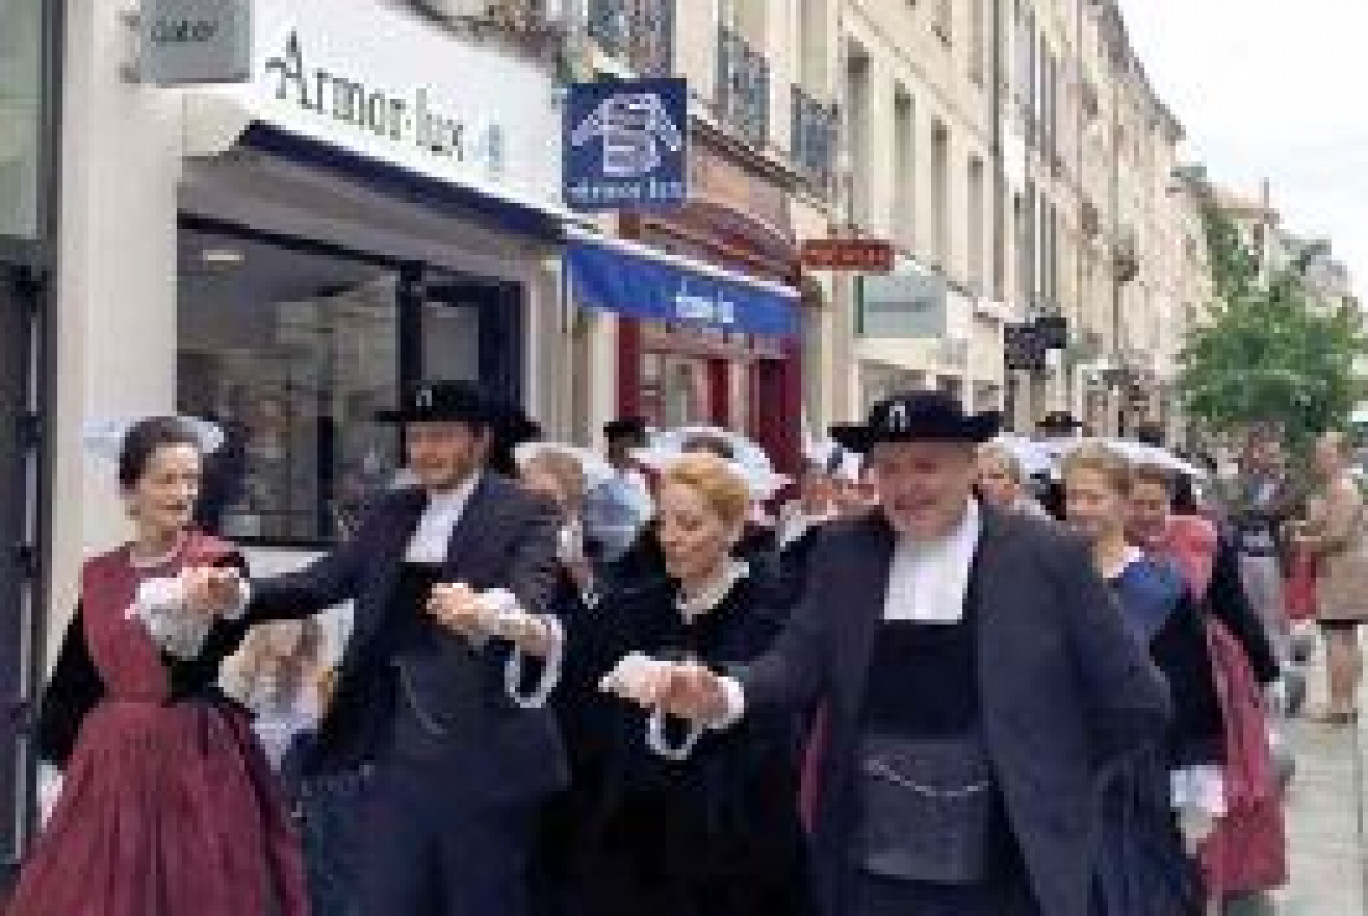 Un vent breton souffle sur la cité ducale. Armor-lux, l’entreprise bretonne de confection s’est ancrée début septembre rue des Dominicains.